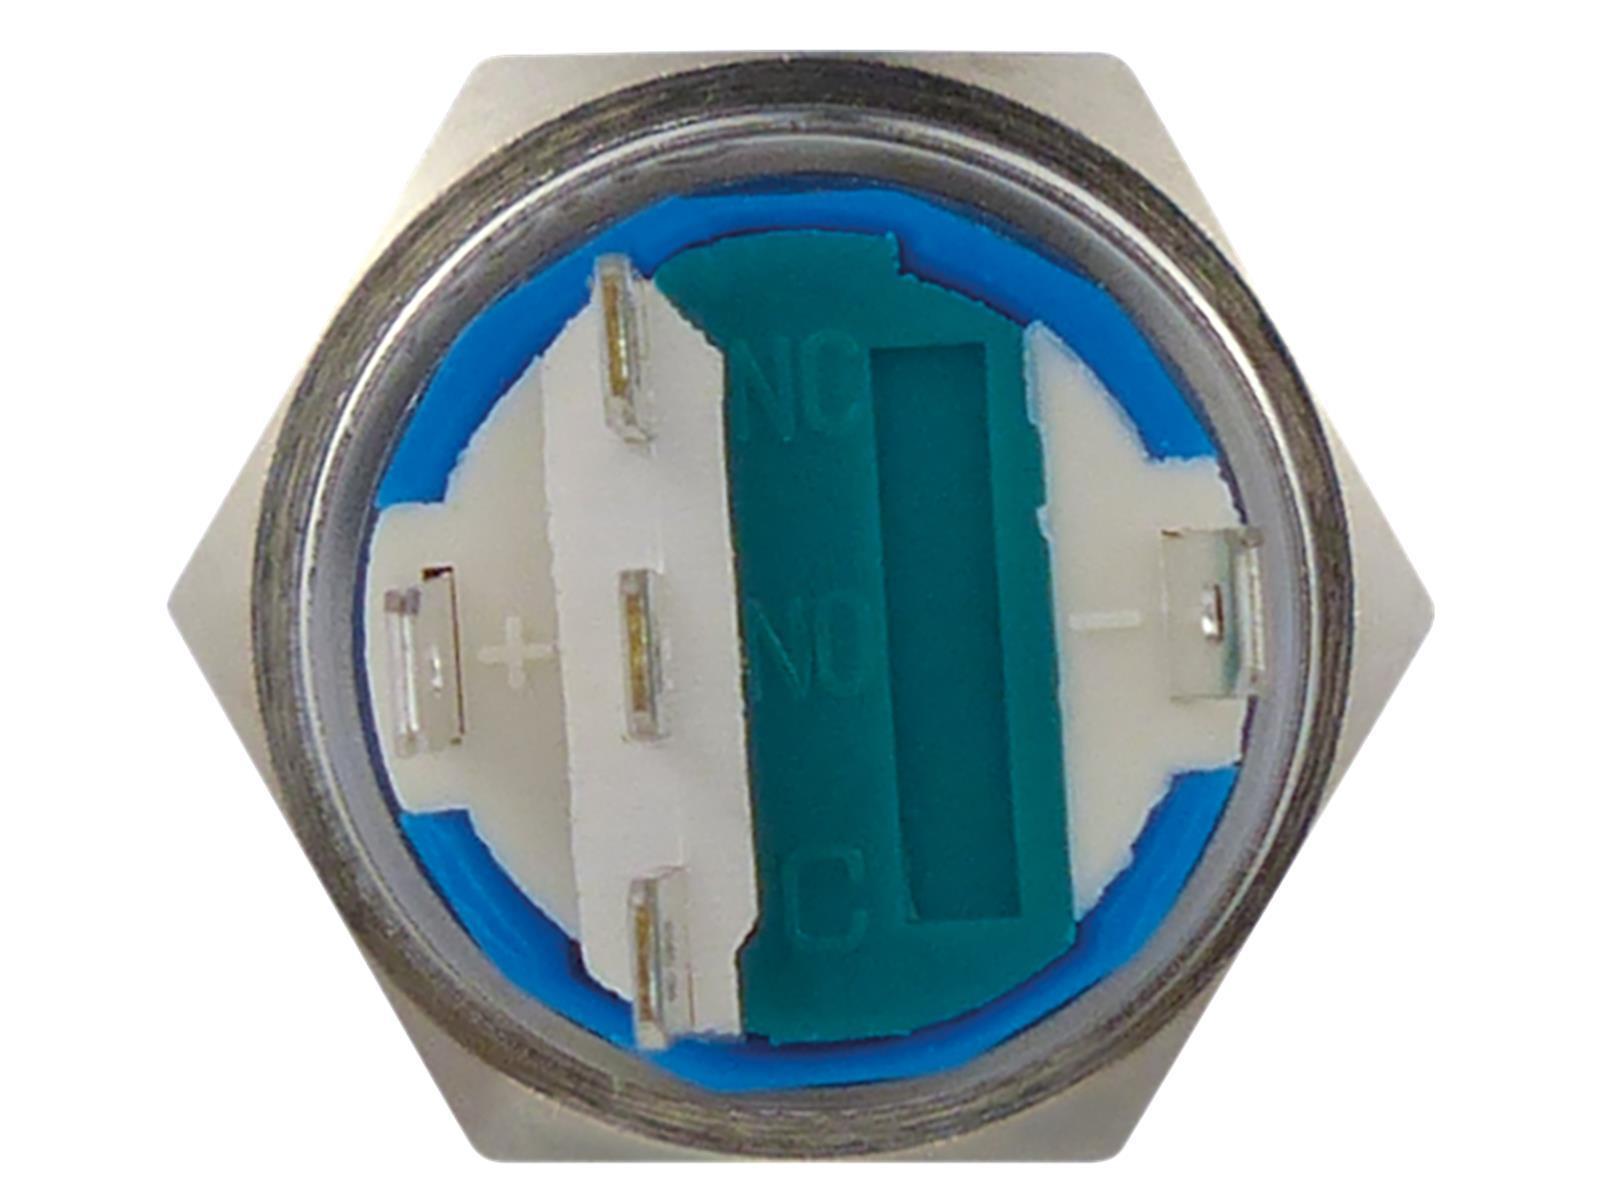 Vollmetallschalter mit Ringbeleuchtung, weiß, 19mm-Ø, 250V, 5A, Lötanschluss